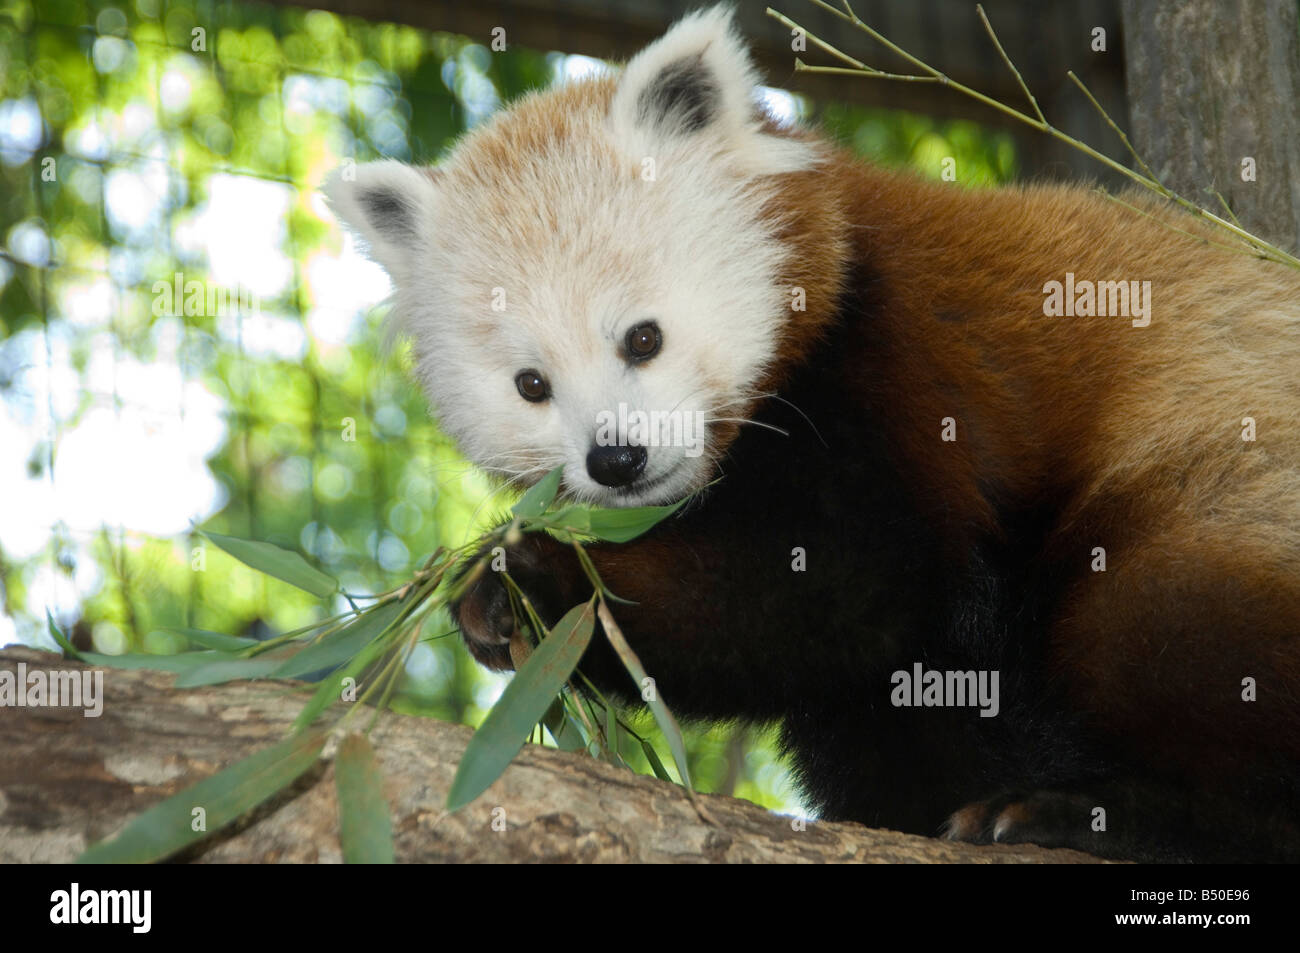 Red Panda eating Stock Photo